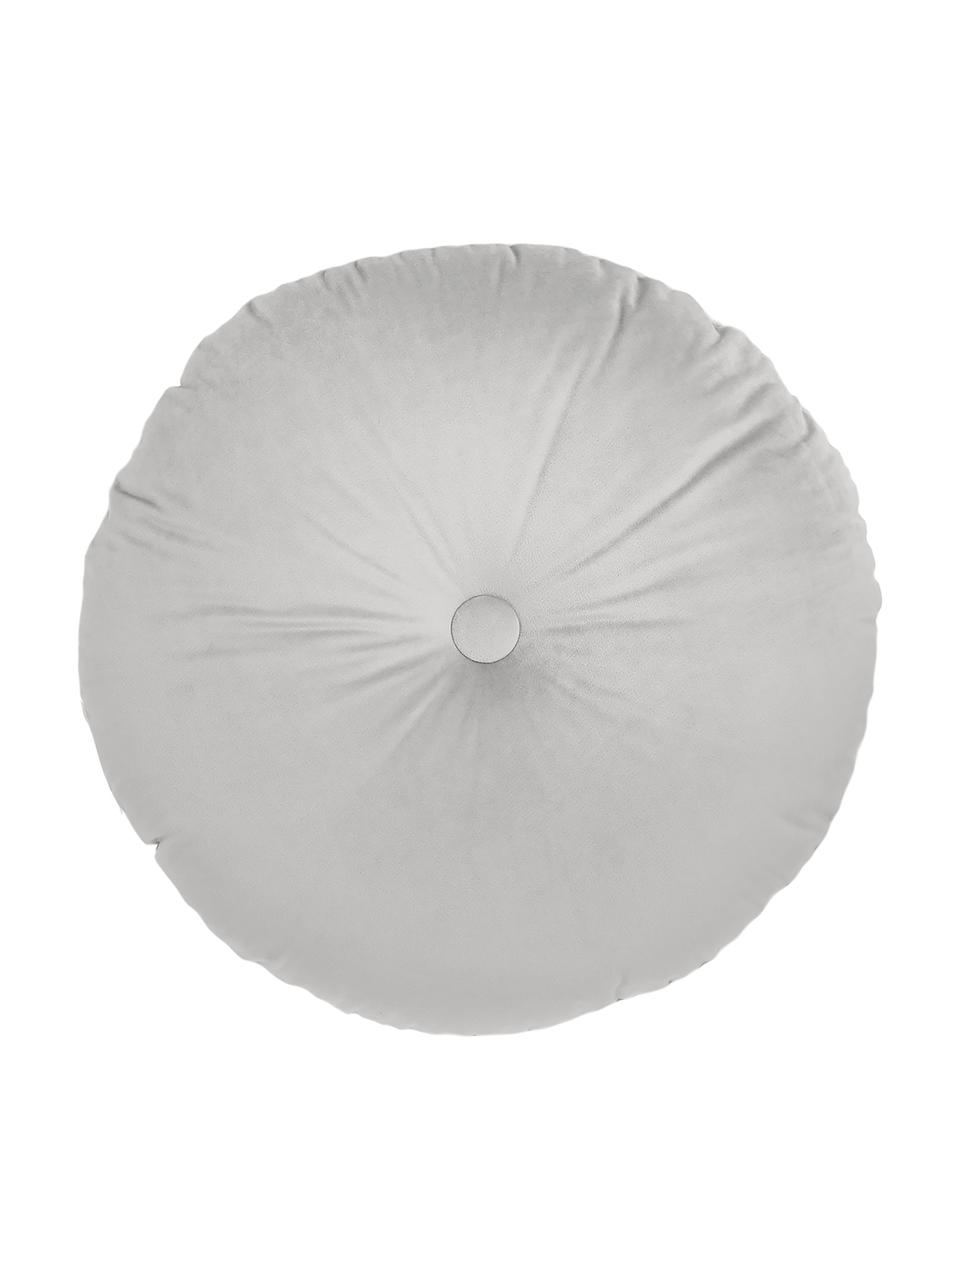 Rundes glänzendes Samt-Kissen Monet in Silbergrau, Bezug: 100% Polyestersamt, Silbergrau, Ø 40 cm